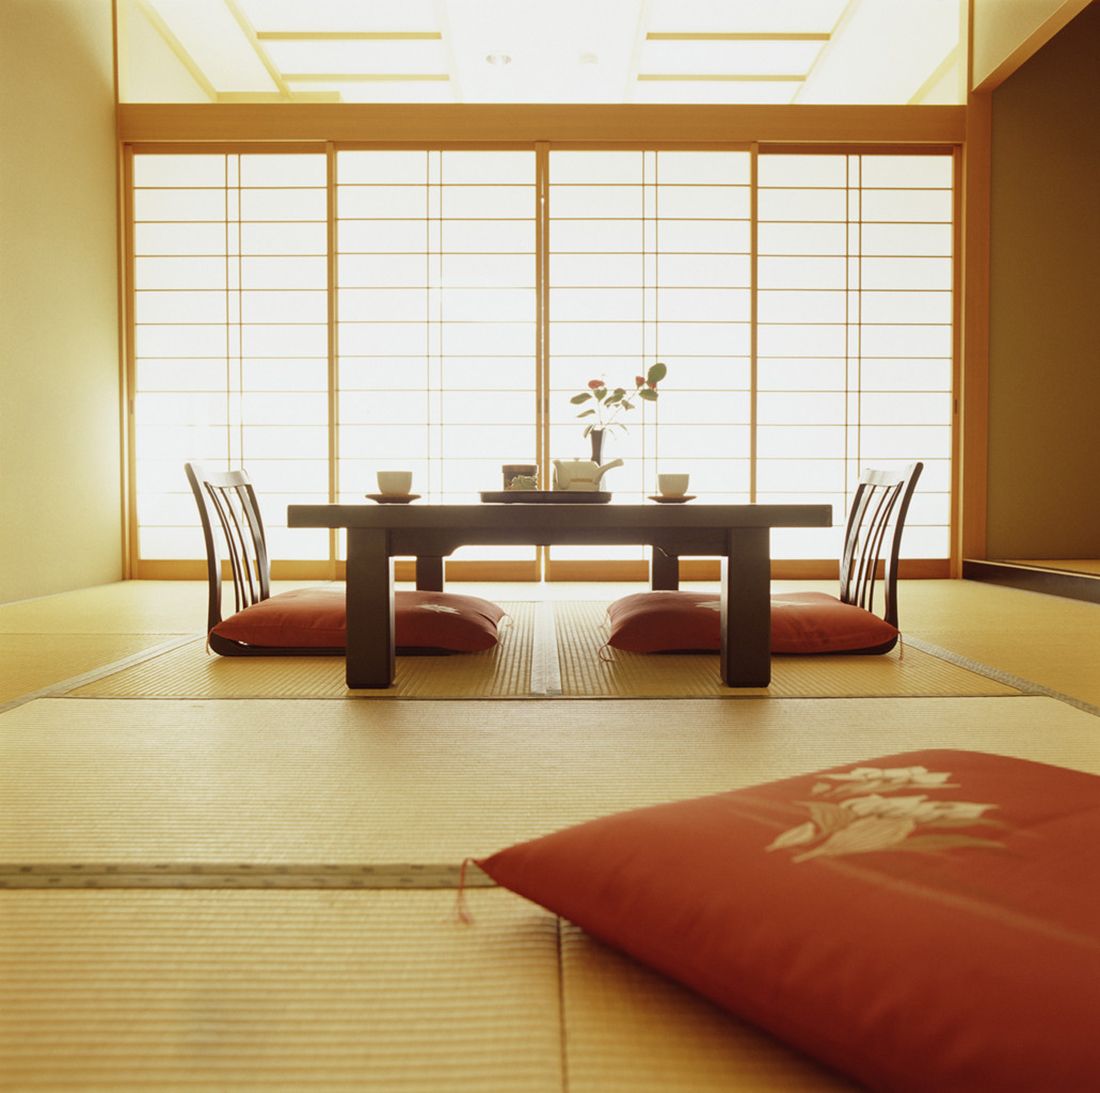 Nội thất thấp sàn cũng là kiểu thiết kế được người Nhật ưa chuộng bởi chúng tinh giản, gọn gàng, không chiếm nhiều diện tích. Nhờ vậy, con người khi ngồi cạnh nhau sẽ có cảm giác gần gũi hơn, mở lòng cùng nhau hơn.